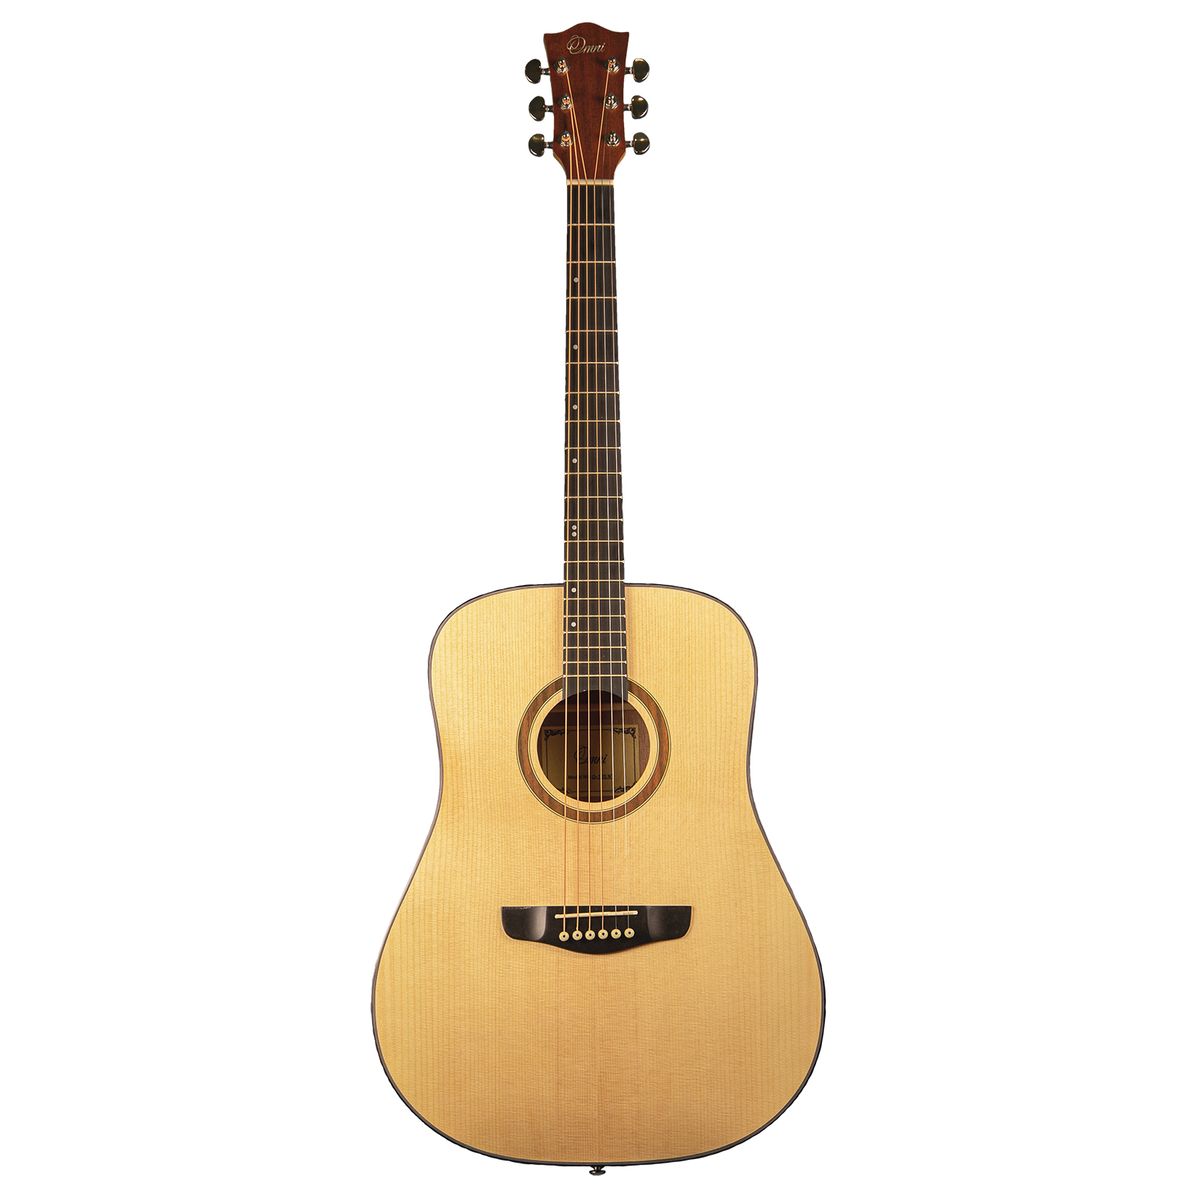 Omni D-120 NT акустическая гитара, дредноут, цвет натуральный